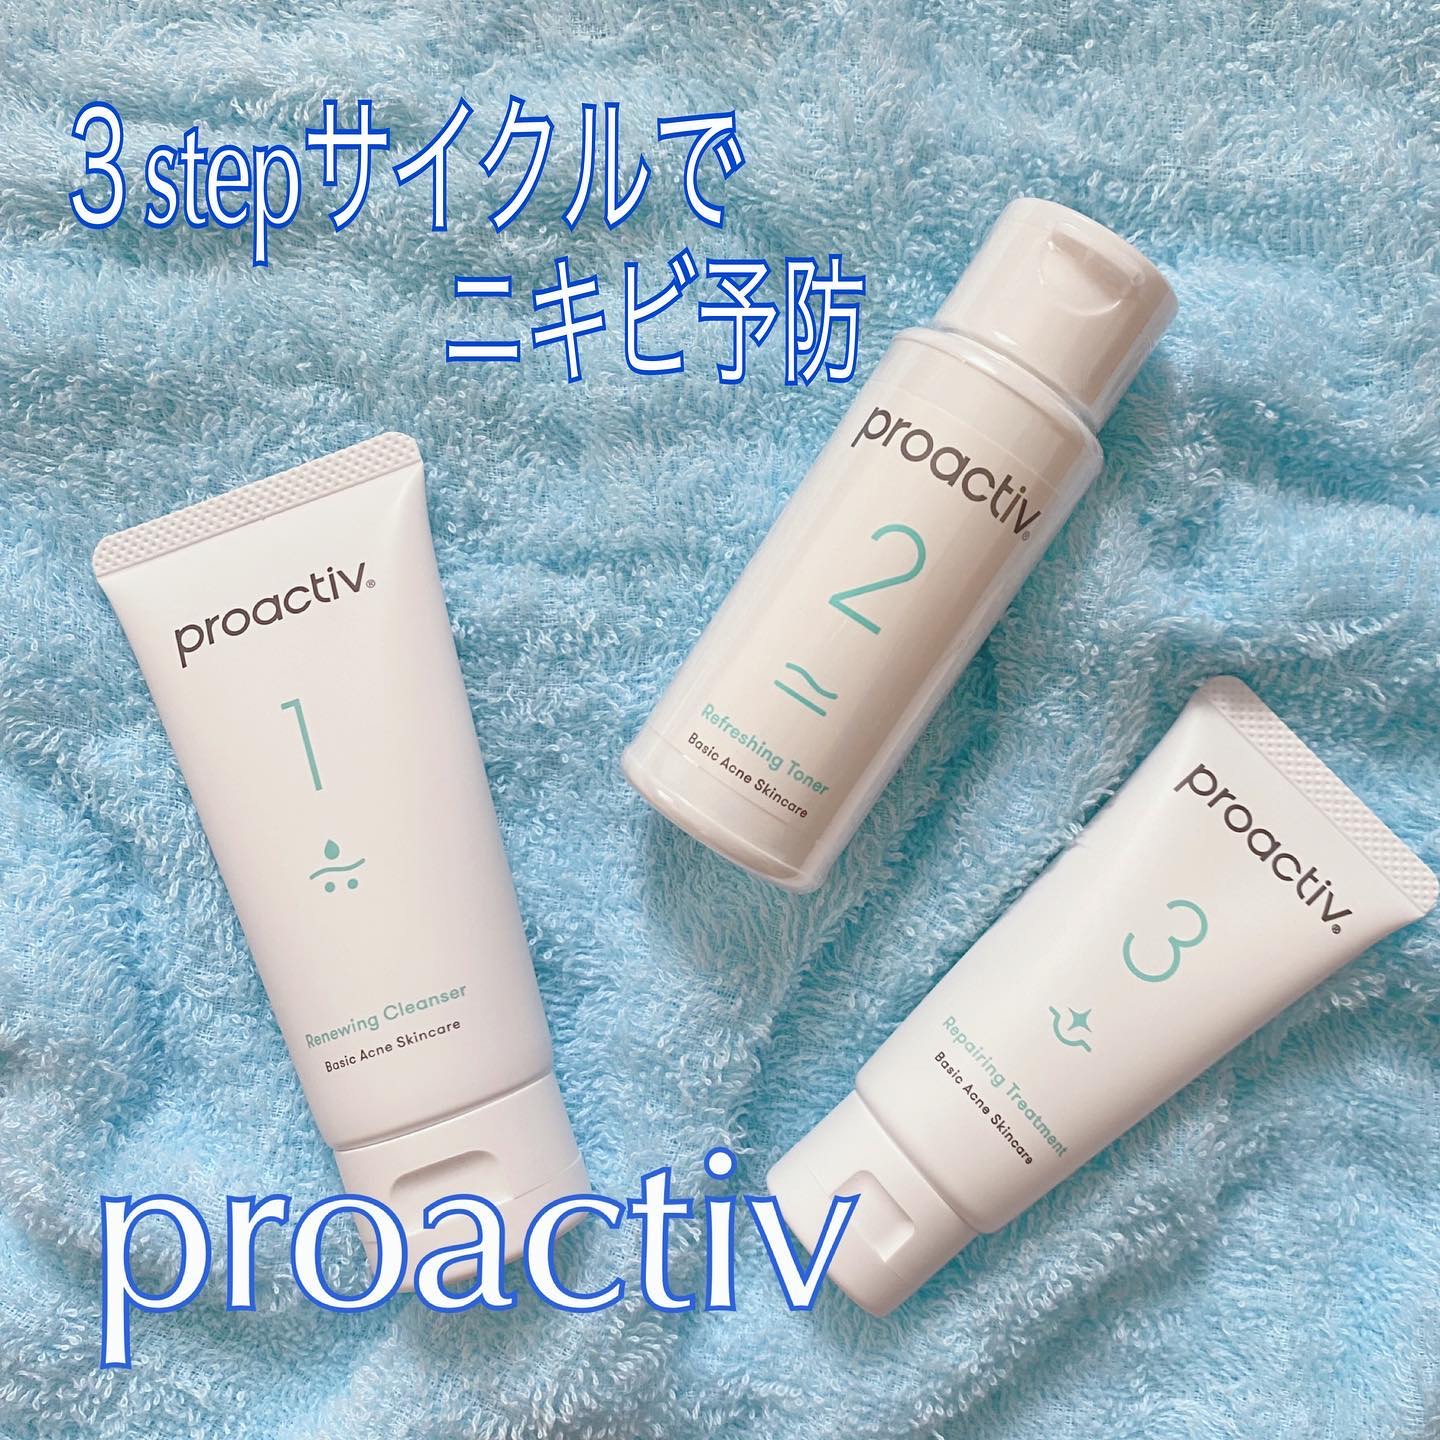 プロアクティブ　proactiv
リニューイング クレンザー 　R
薬用洗顔料 - 6